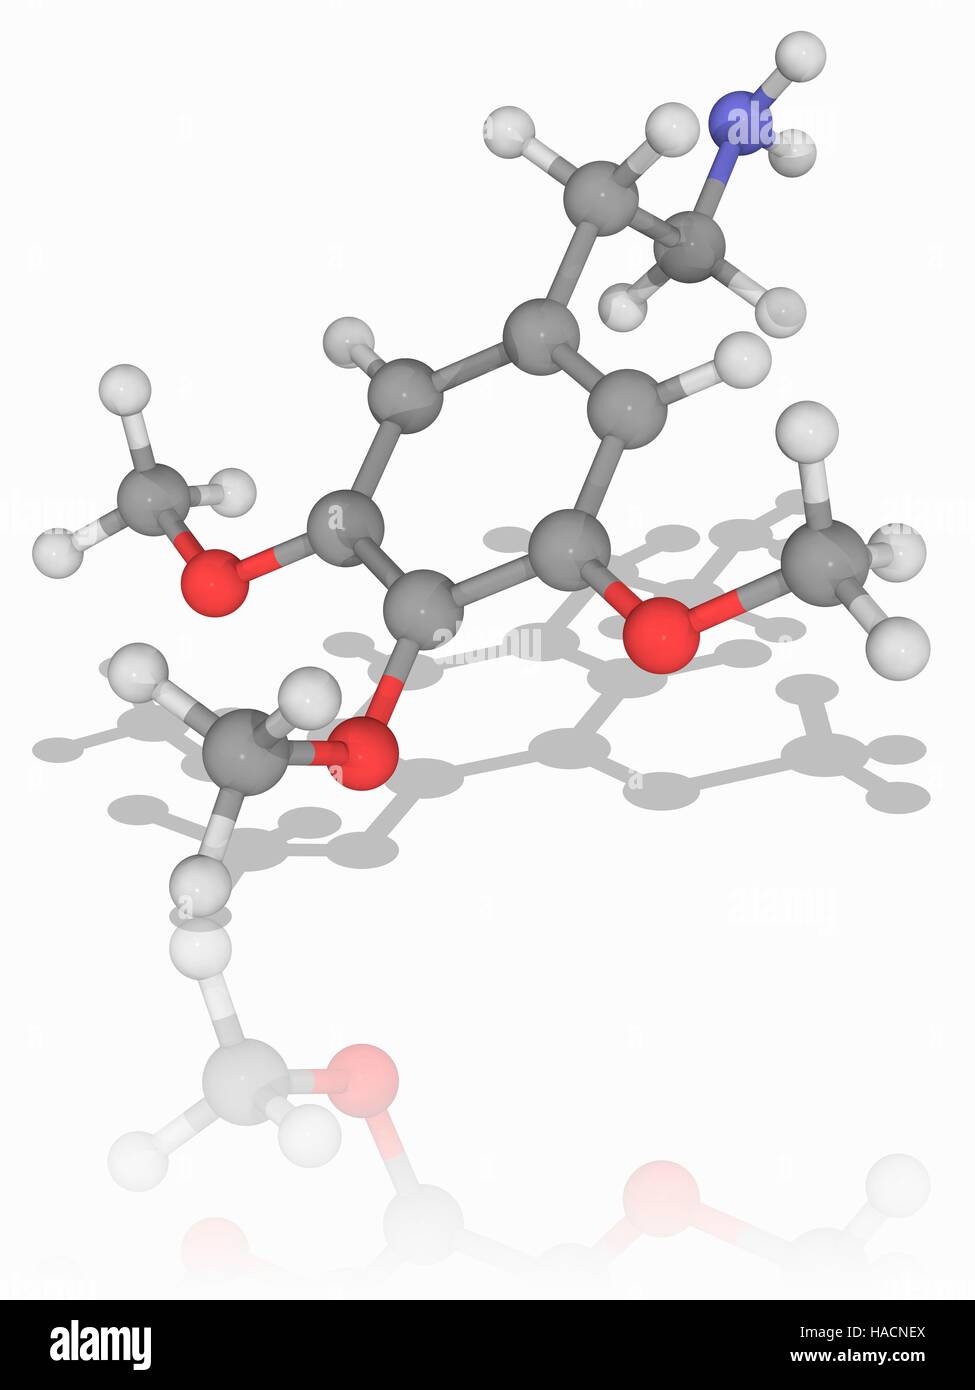 Meskalin. Molekülmodell von Phenethylamine Droge Meskalin (C11. H17. N.O3), ein natürlich vorkommendes Alkaloid psychedelische. Es hat die Droge LSD ähnlich halluzinogene Wirkung. Atome als Kugeln dargestellt werden und sind farblich gekennzeichnet: Kohlenstoff (grau), Wasserstoff (weiß), Stickstoff (blau) und Sauerstoff (rot). Abbildung. Stockfoto